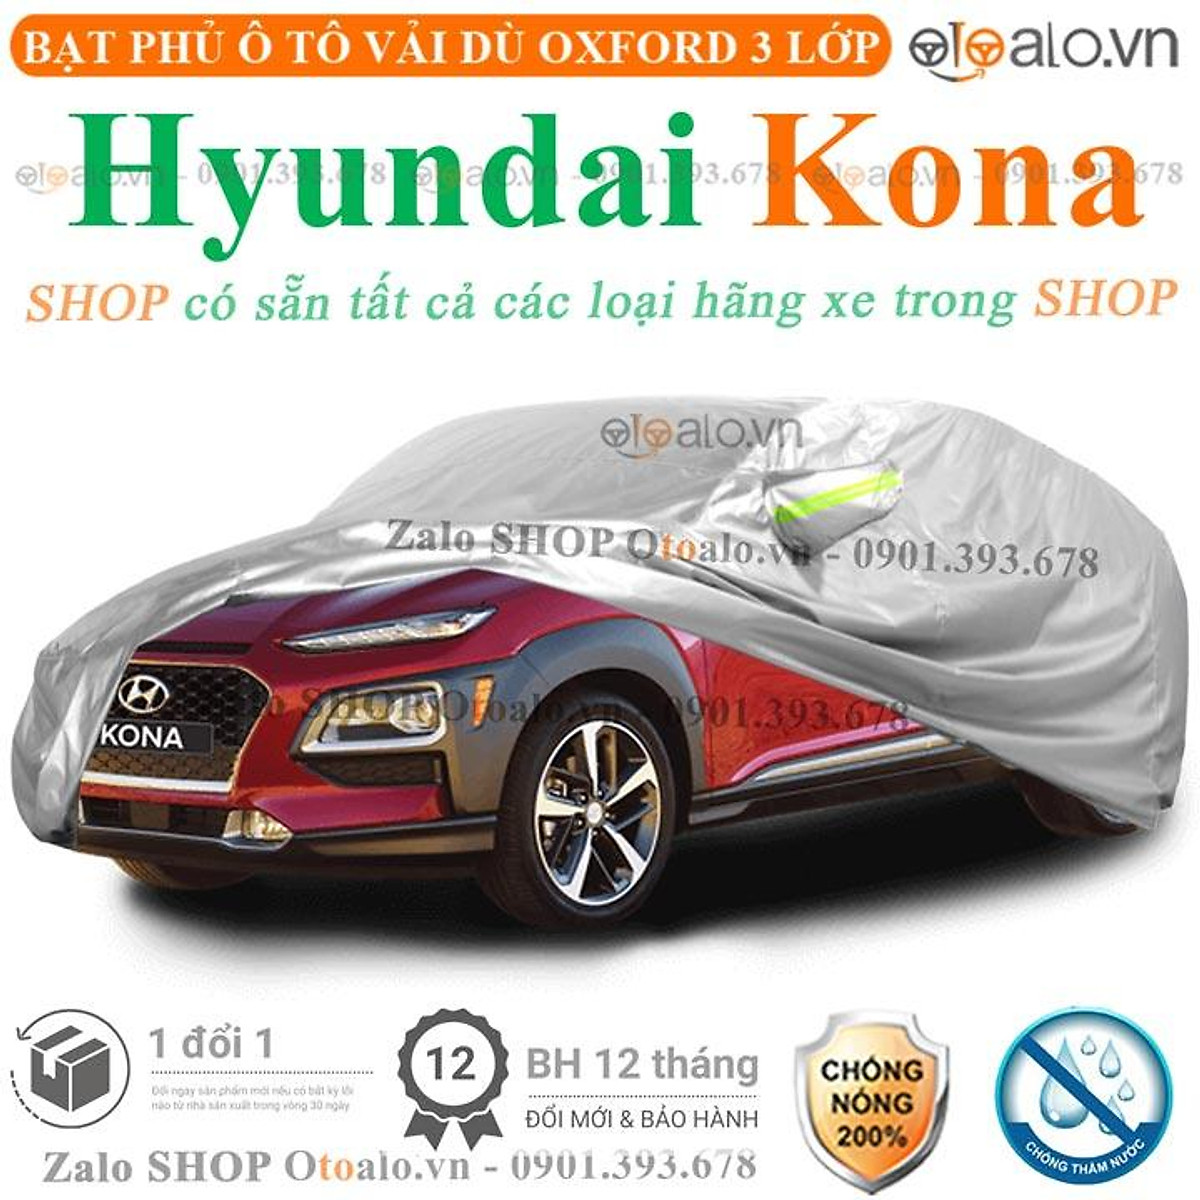 Tìm hiểu tổng quan về dòng xe Hyundai Kona  MAST